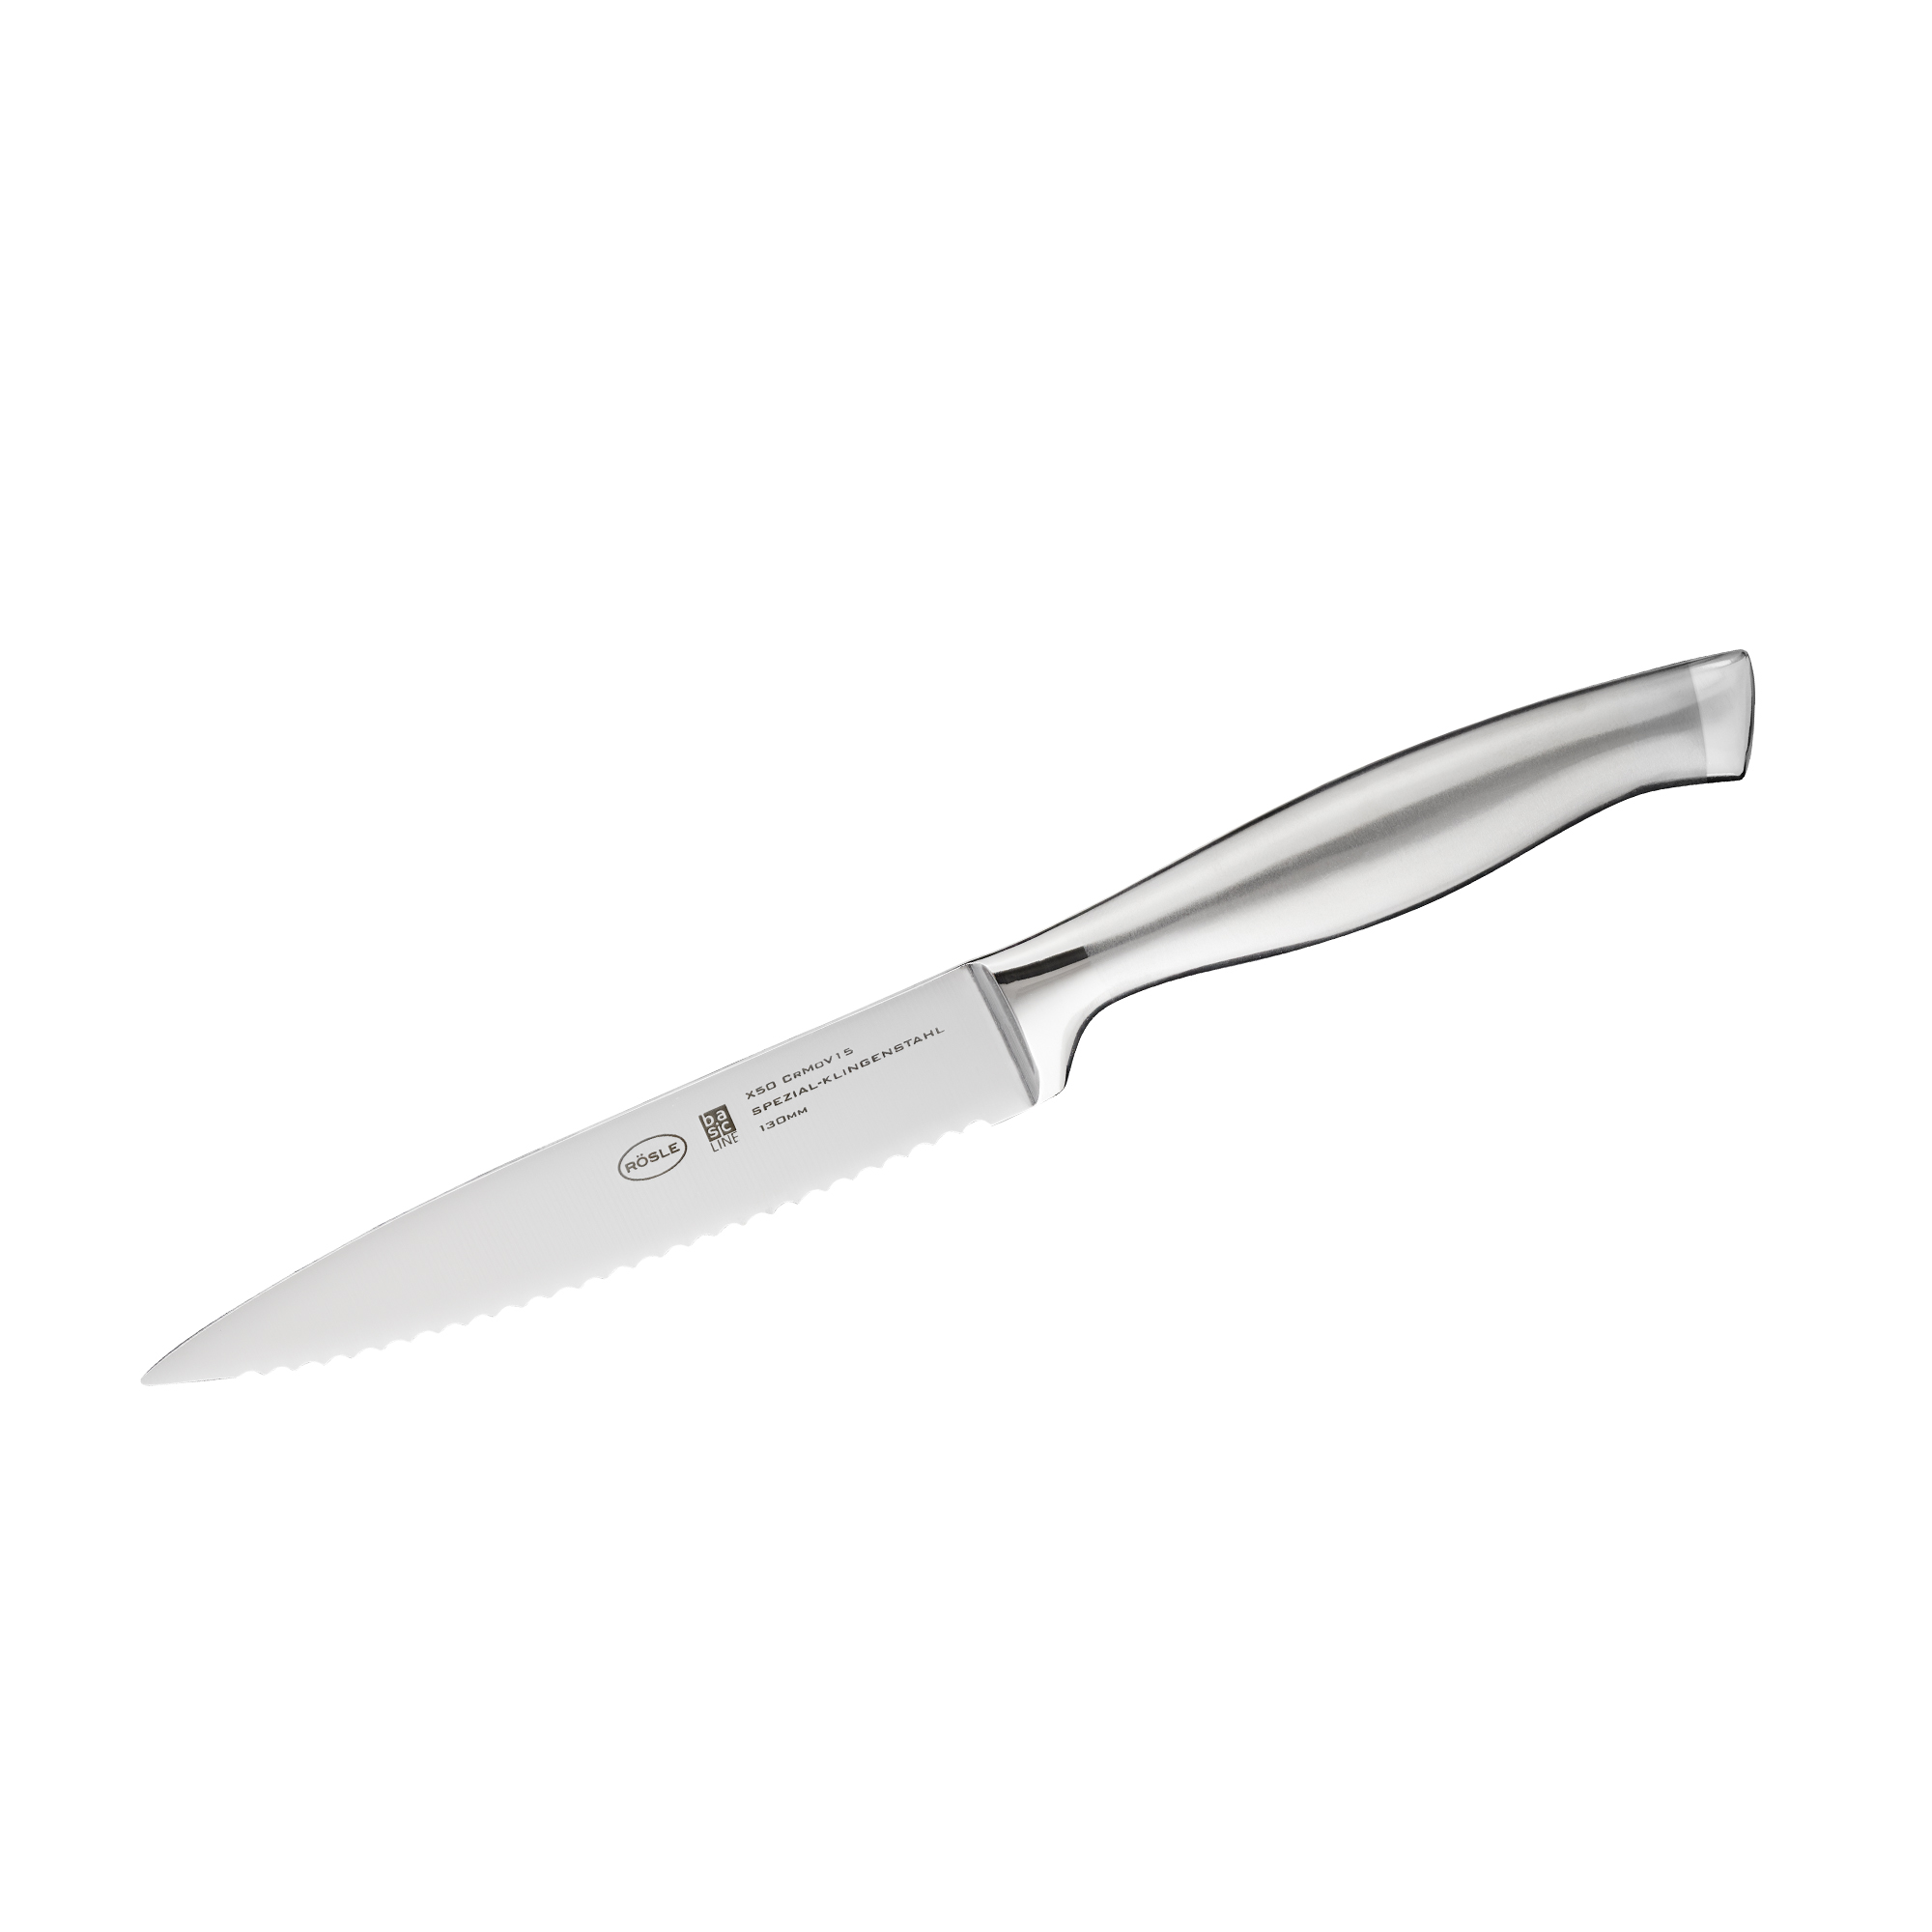 Universal knife BASIC LINE 13 cm I 5.1 in.